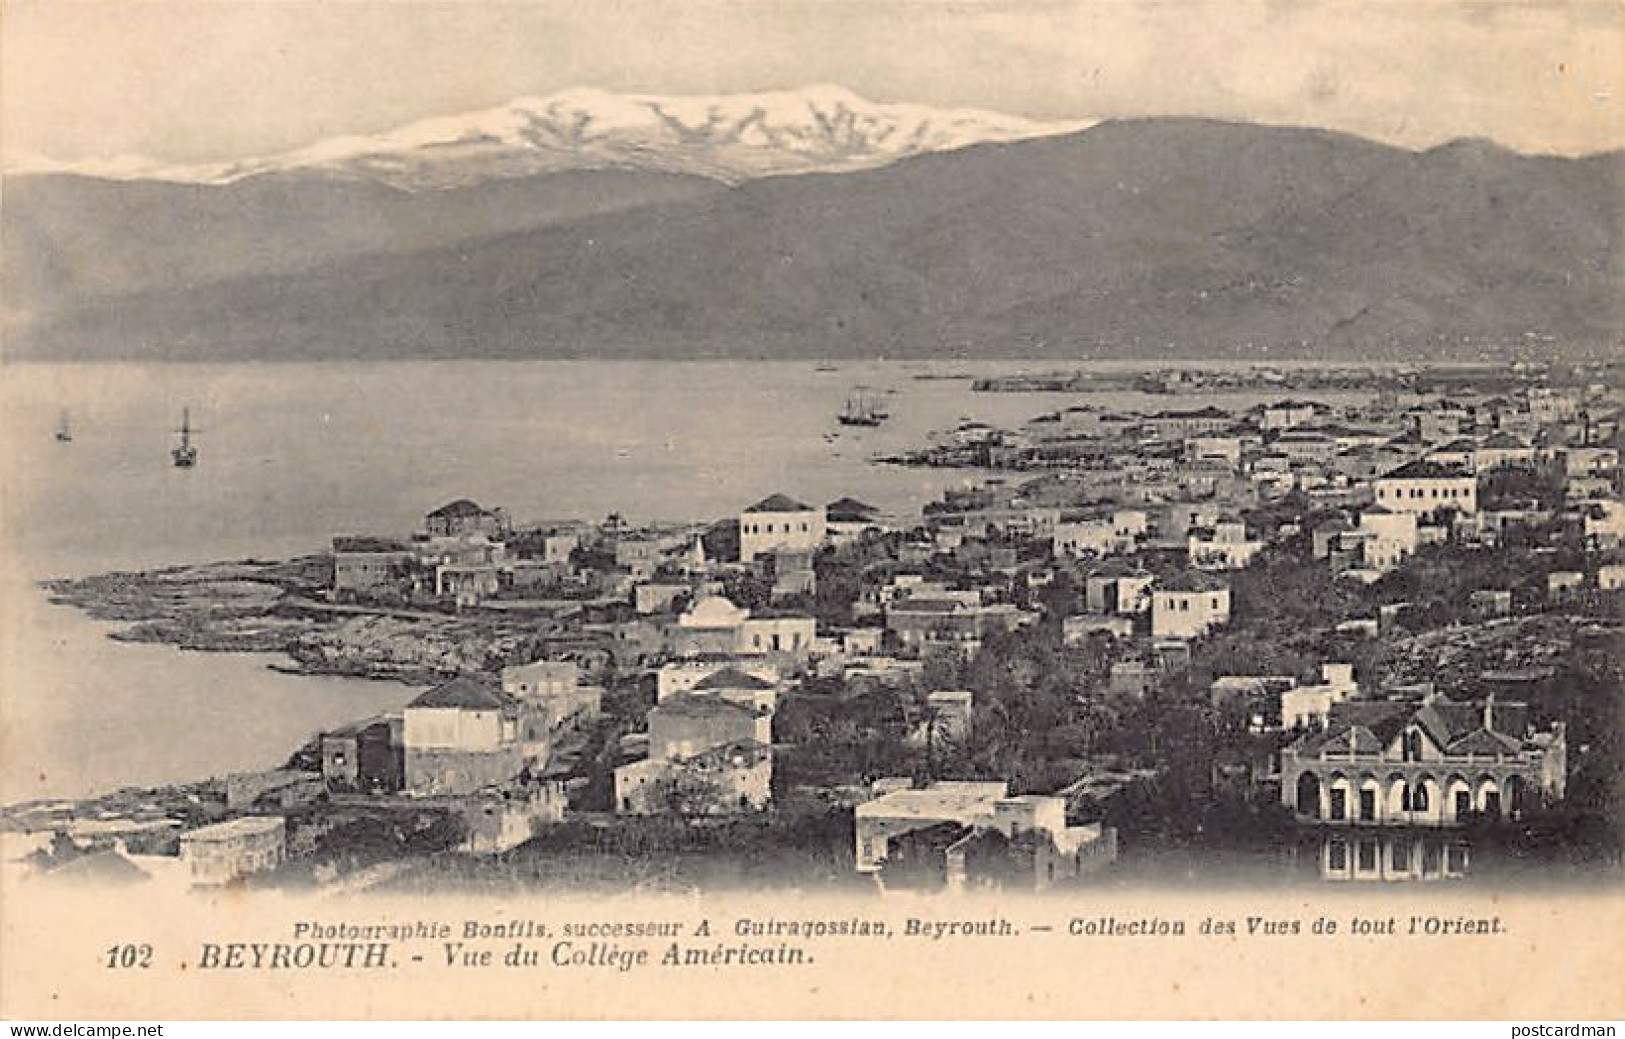 Liban - BEYROUTH - Vue Du Collège Américain - Ed. Photographie Bonfils, Successeur A. Guiragossian 102 - Libanon